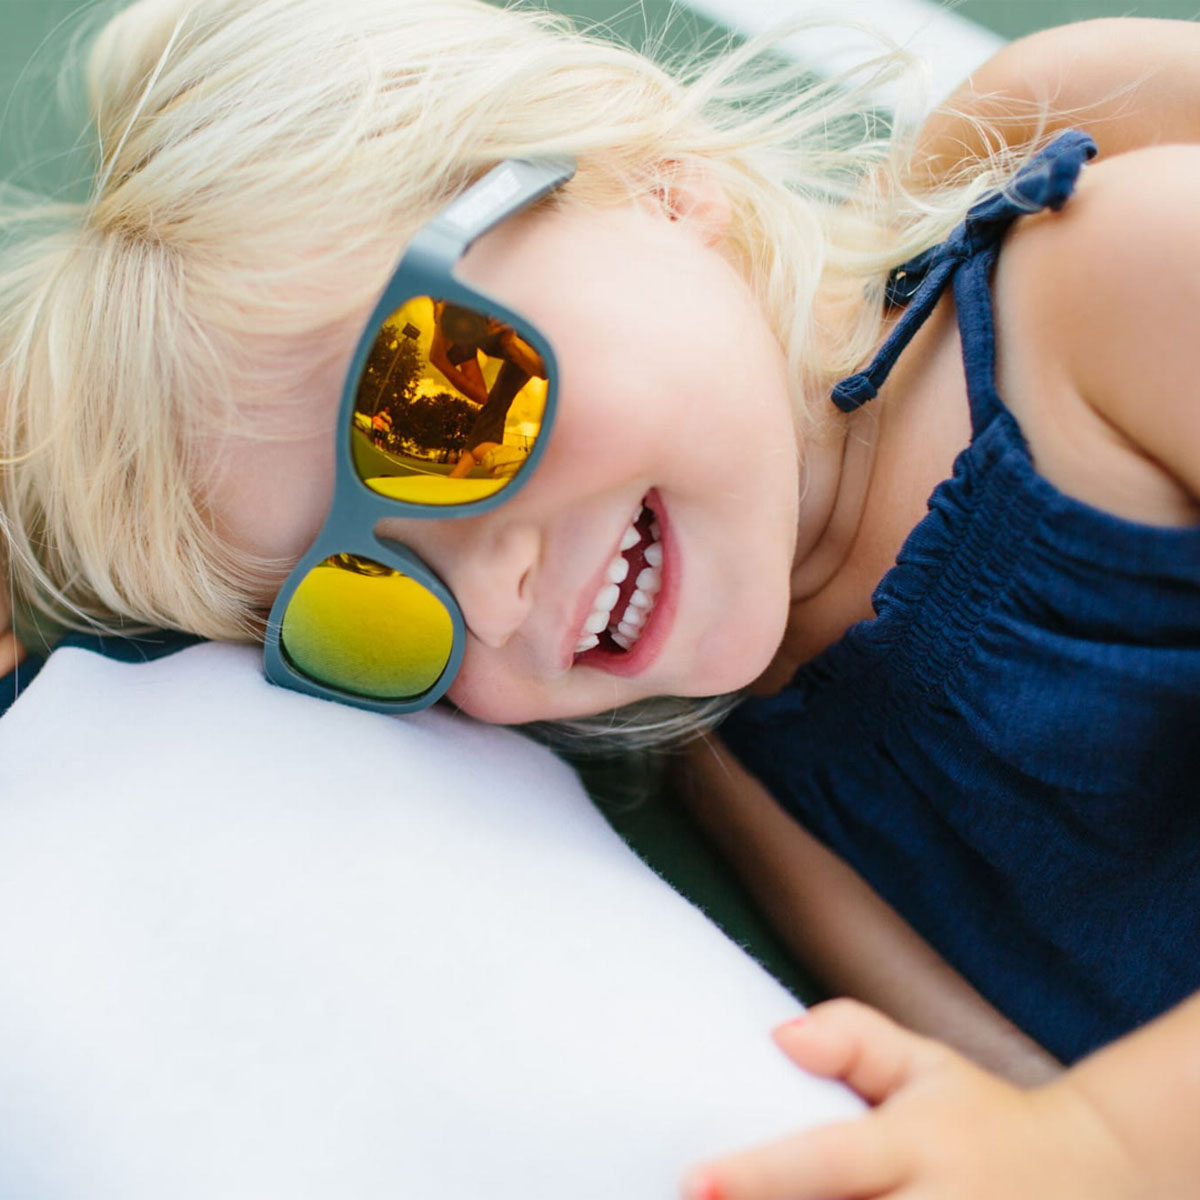 Kính chống tia cực tím có tròng kính phân cực trẻ em Babiators – The Islander, tráng gương màu cam, 6-10 tuổi